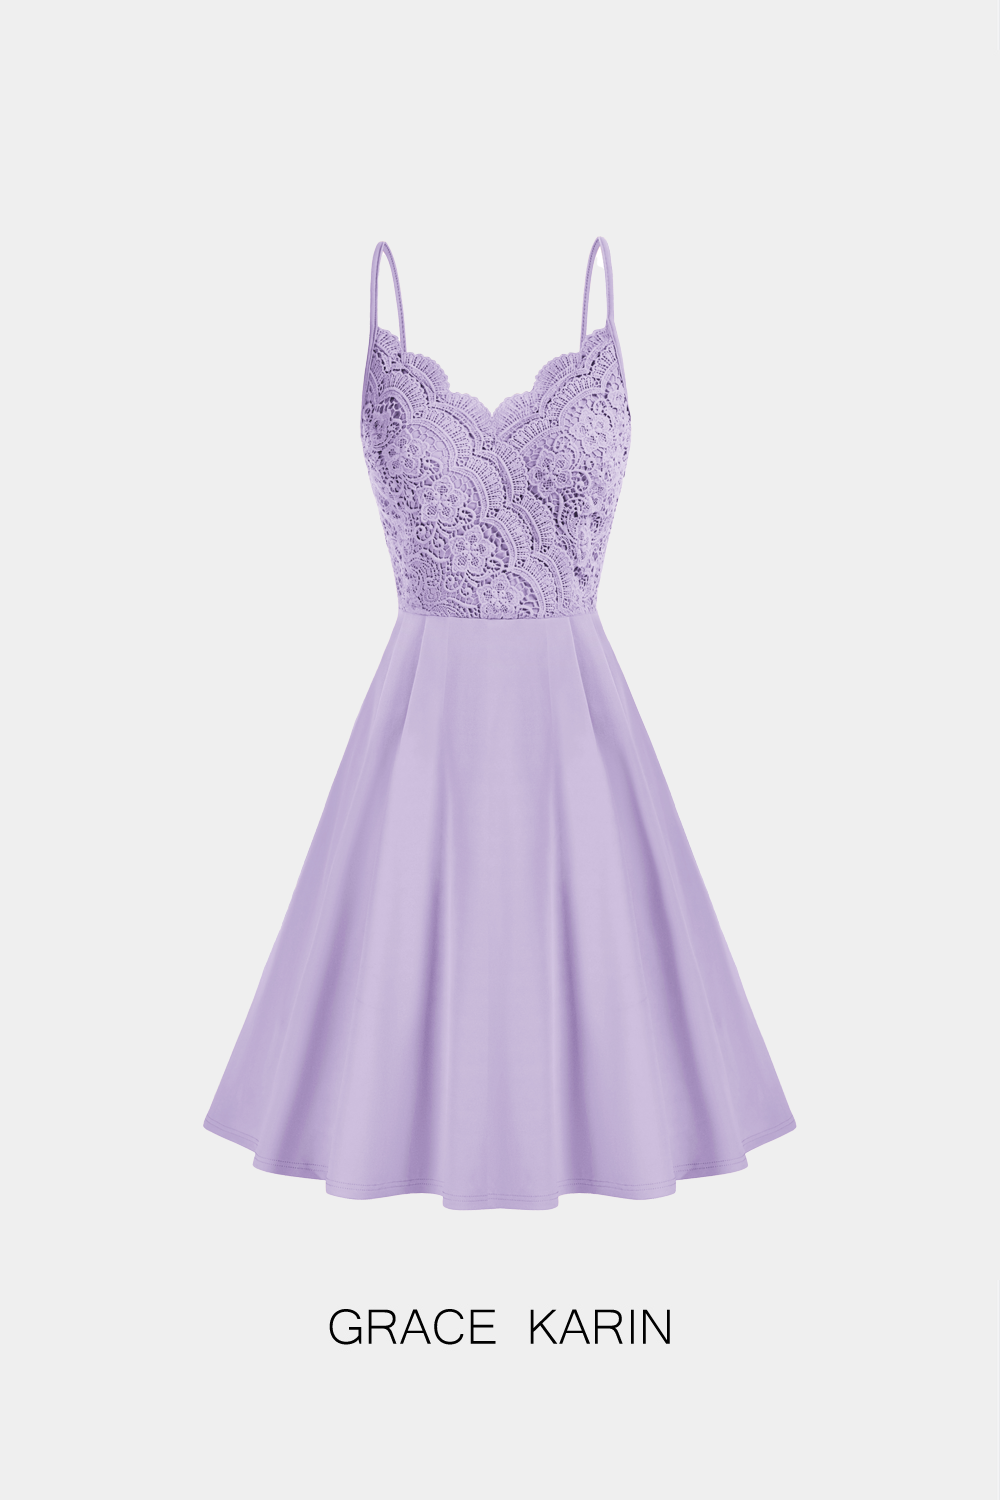 【Only $9.99】Grace Karin Women Lace Patchwork Cami Dress Spaghetti Straps V-Neck A-Line Dress